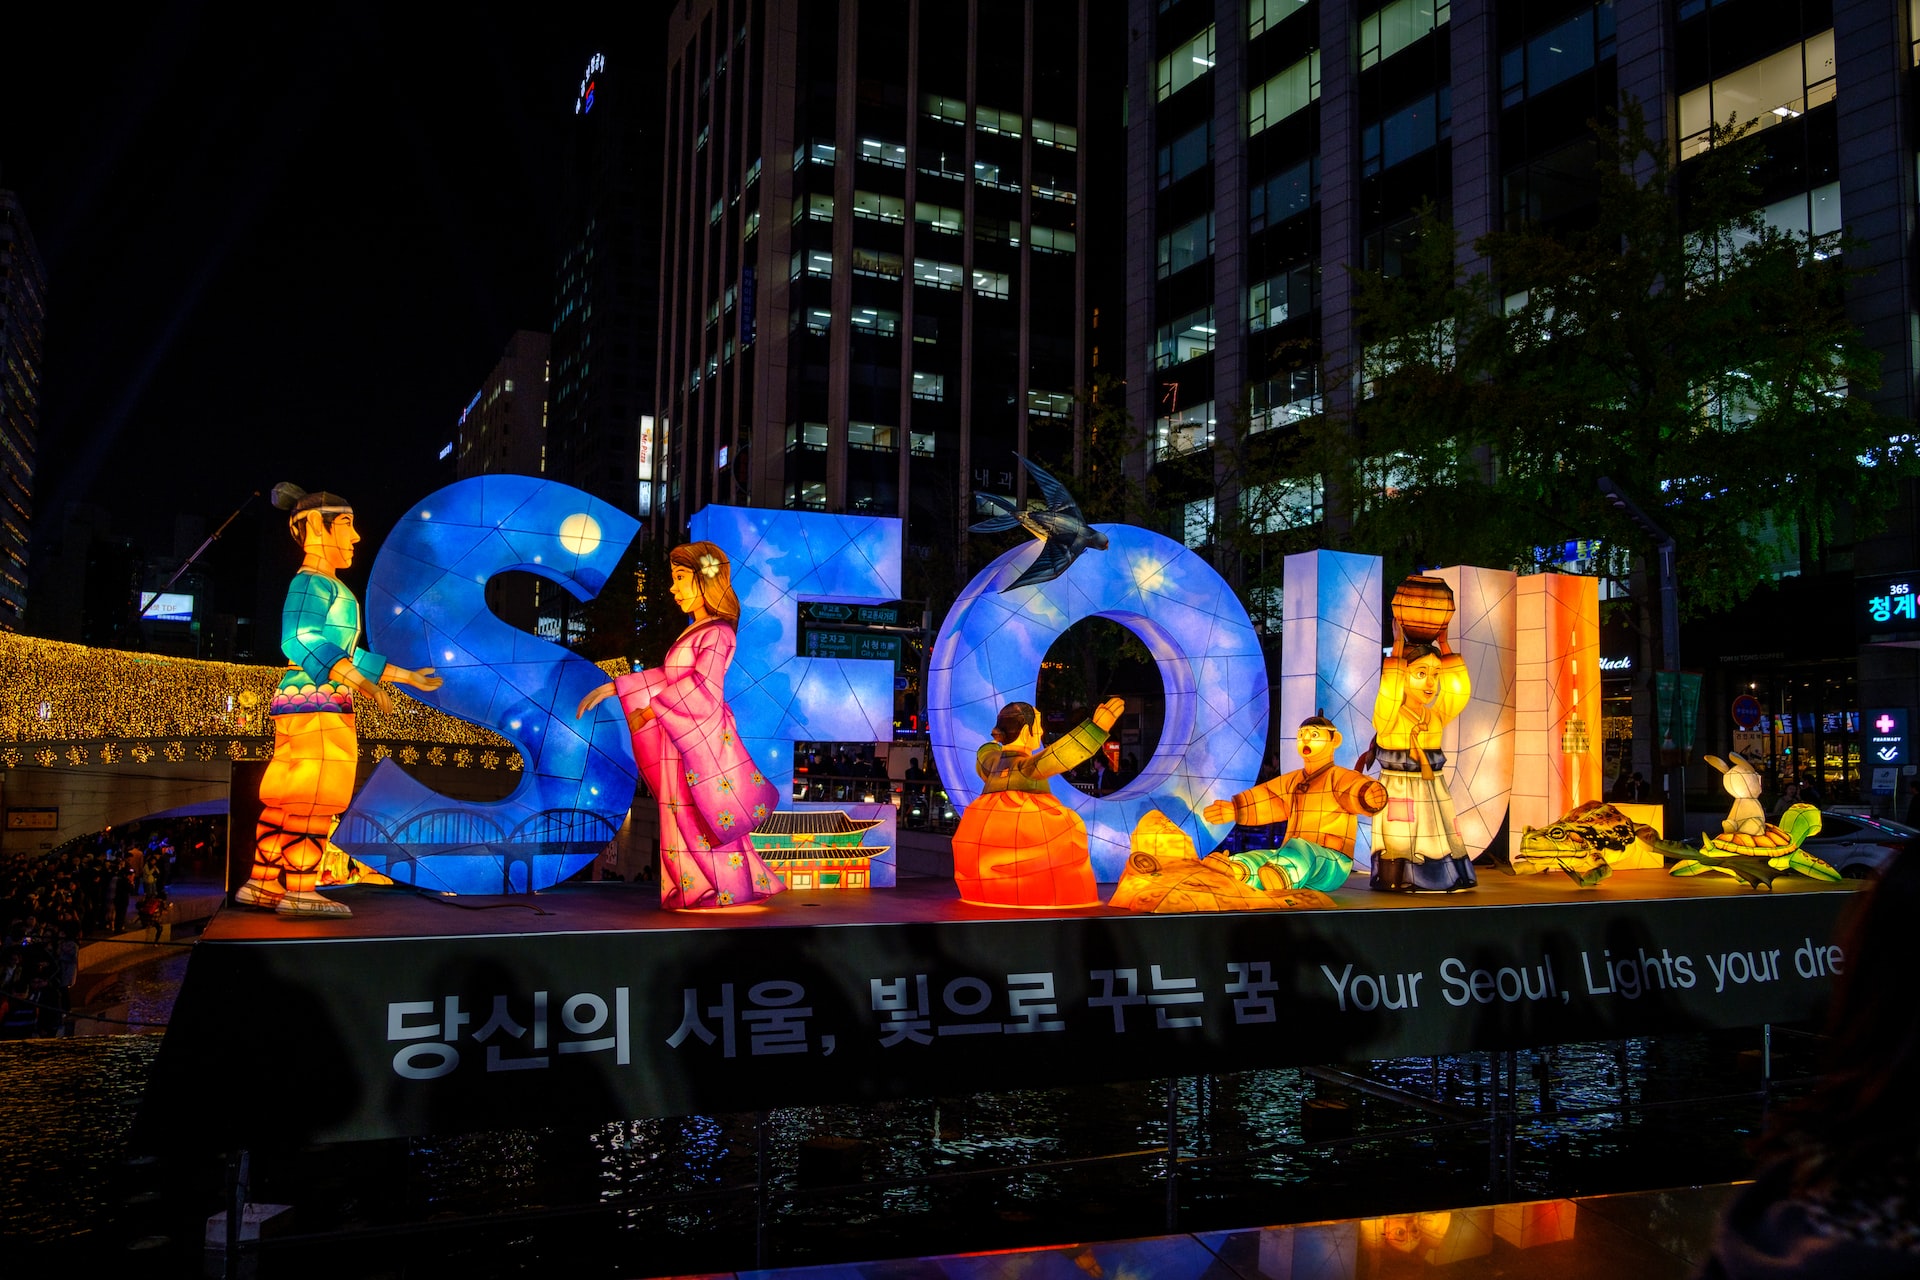 Korean Language - About South Korea’s Next Biggest Import